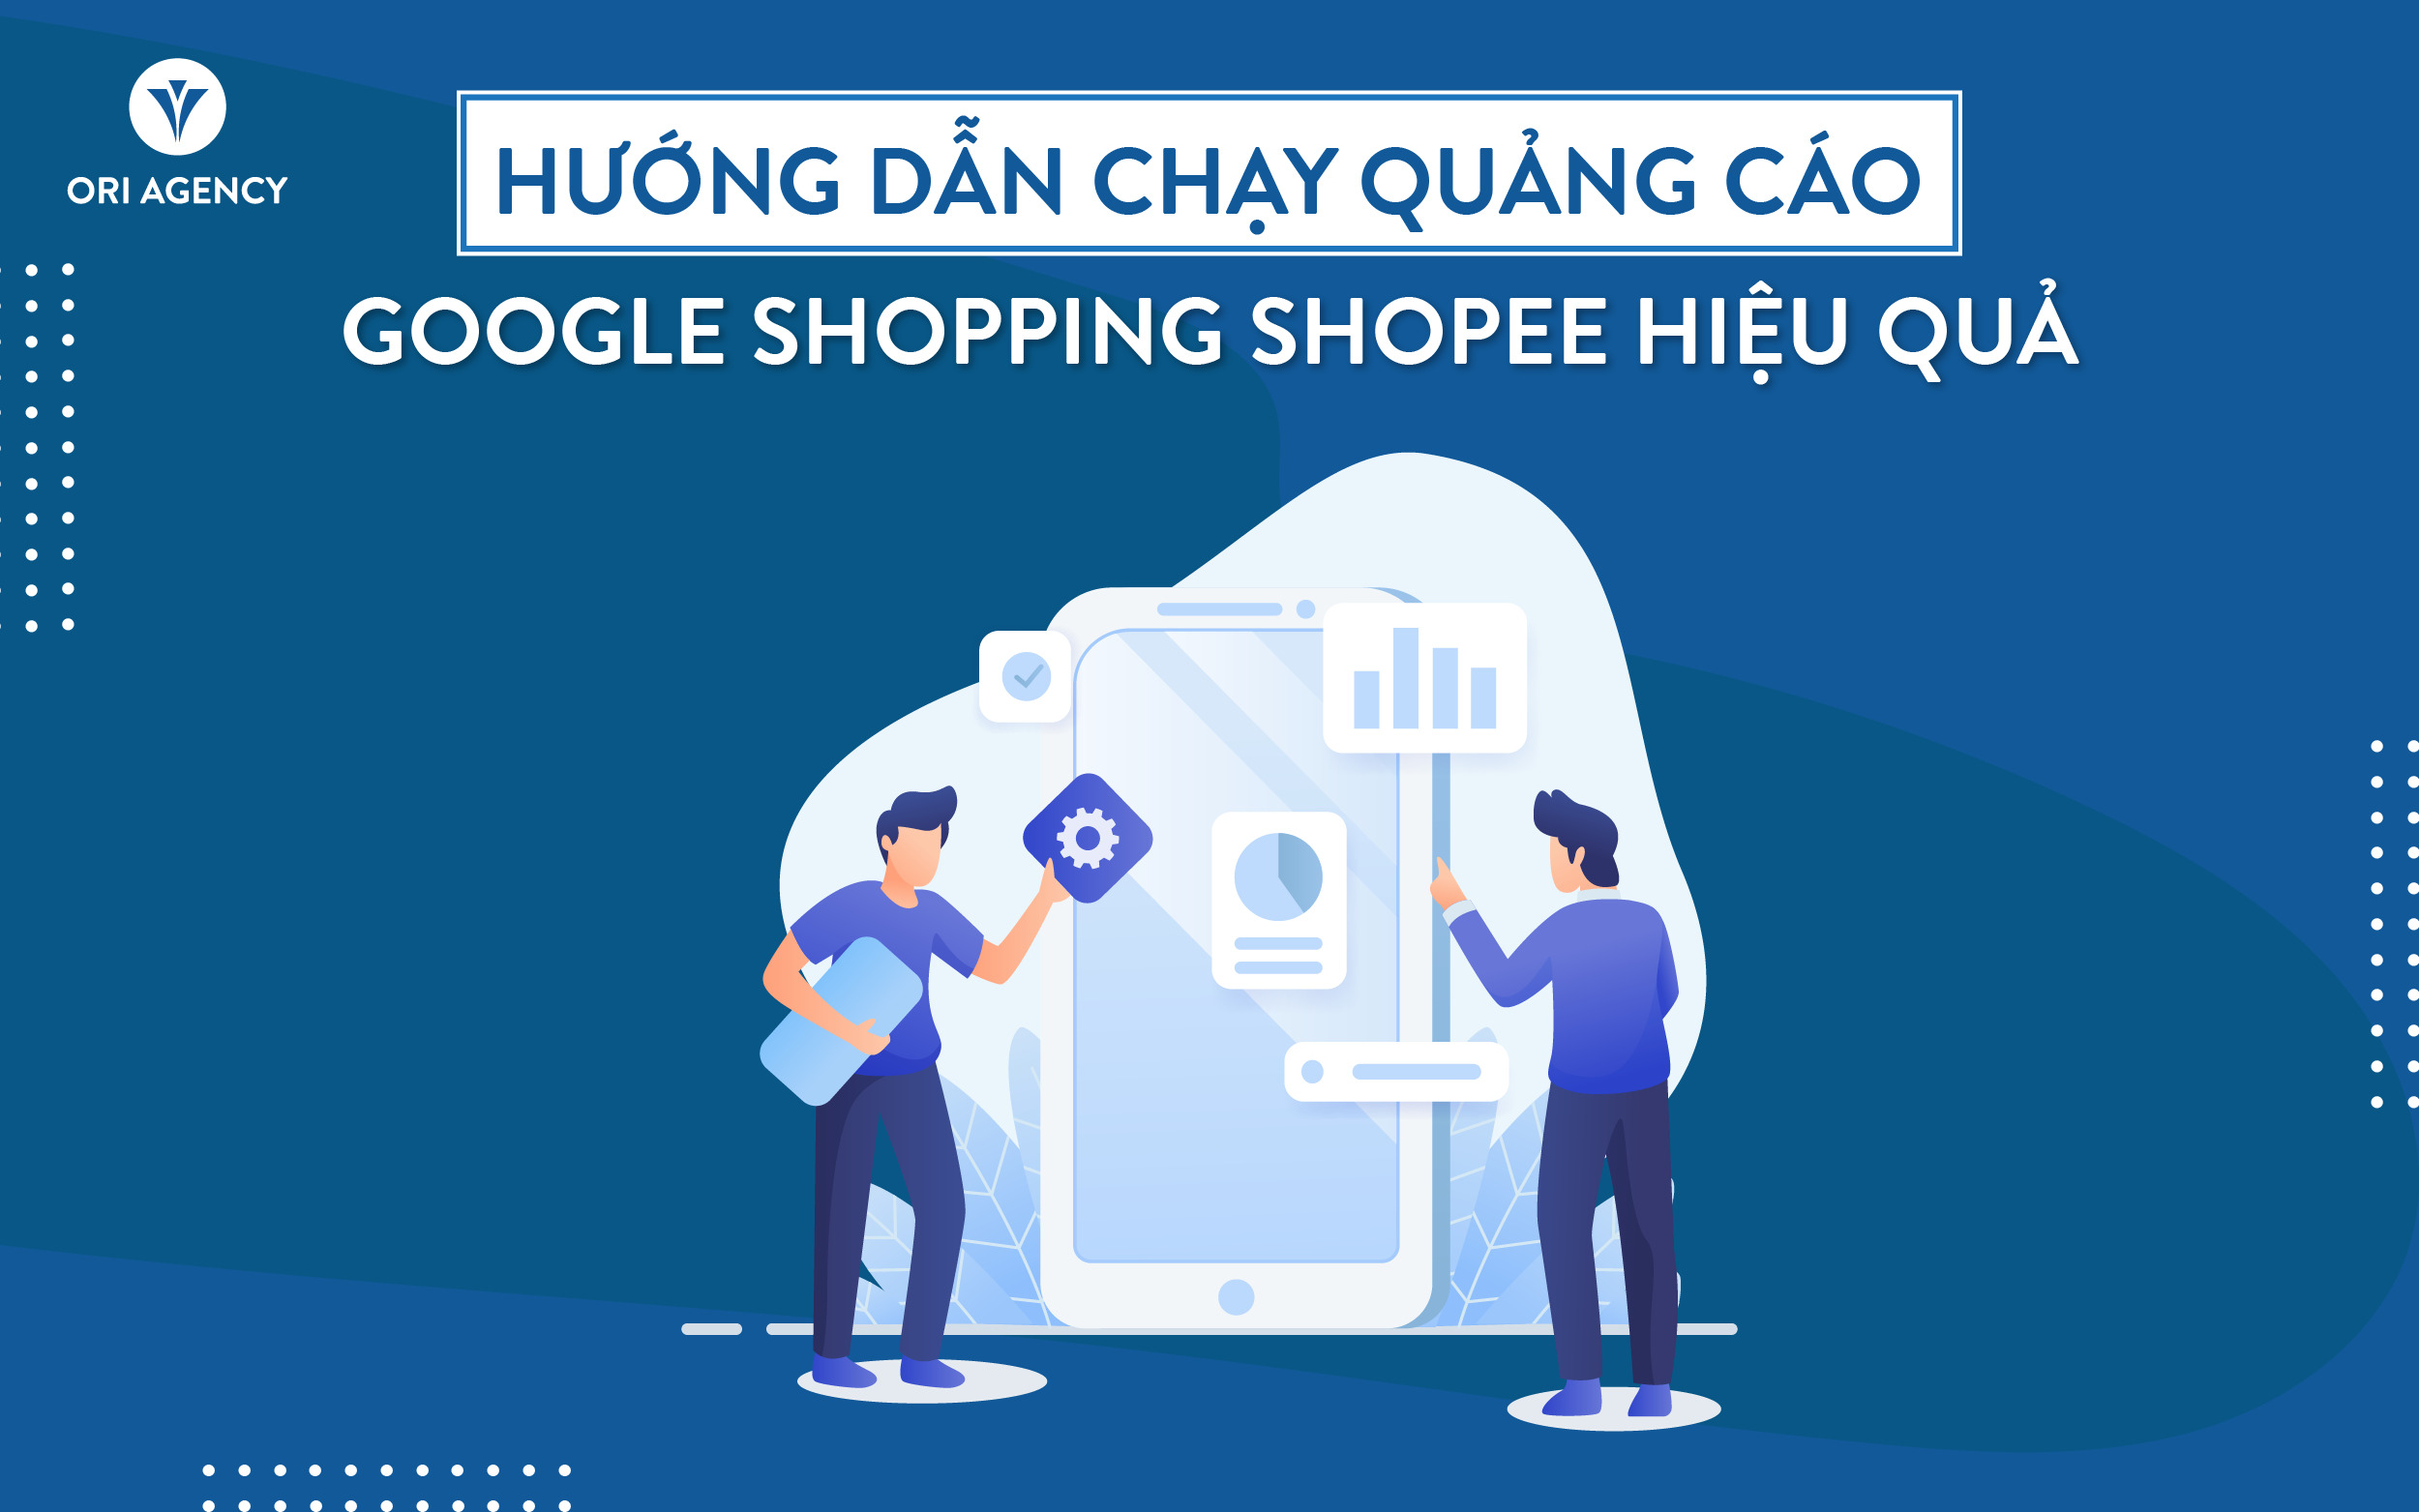 Hướng dẫn chạy quảng cáo Google Shopping Shopee hiệu quả